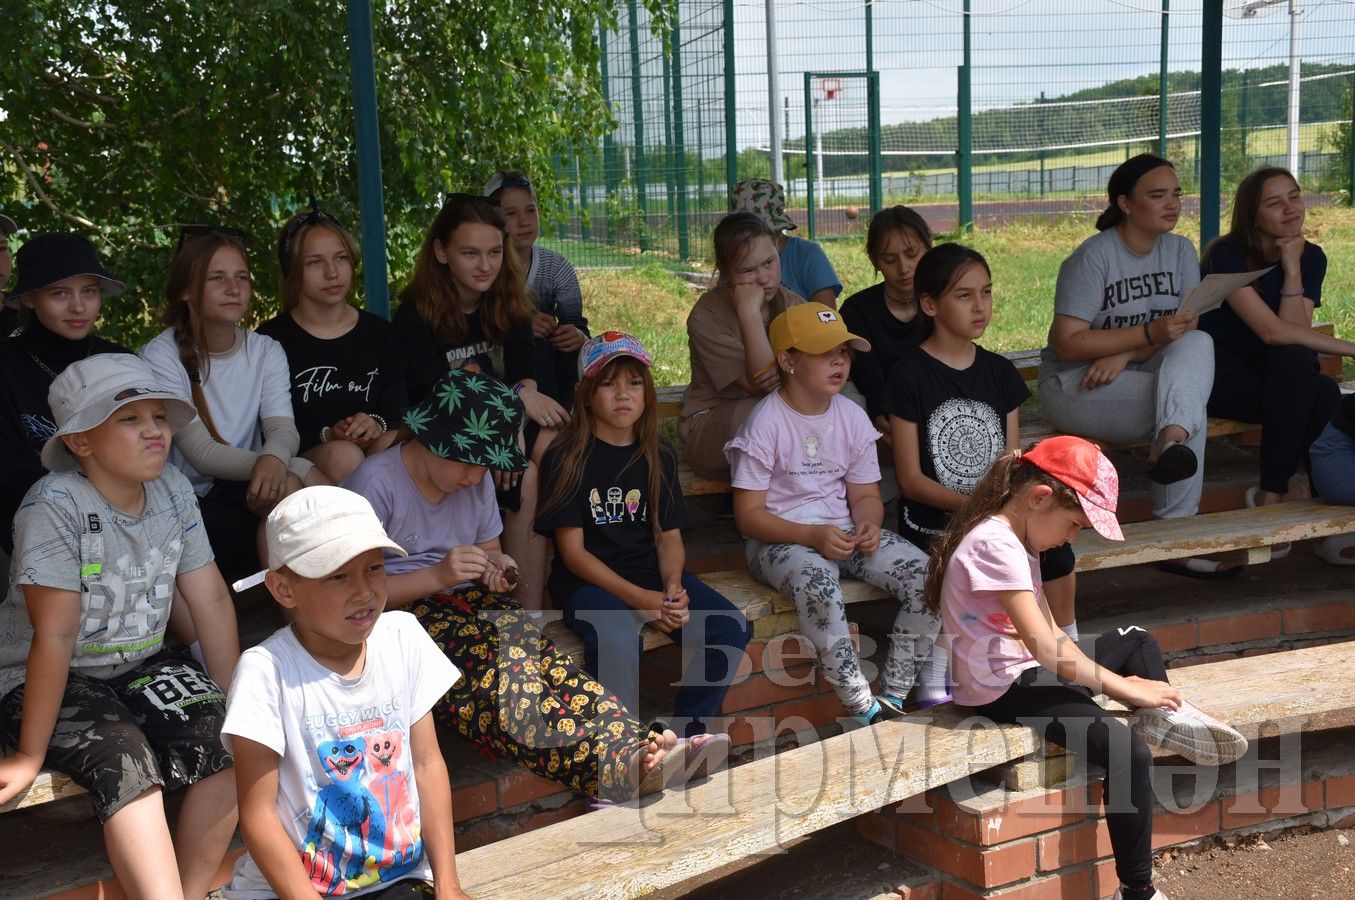 Дети, отдыхающие в лагере " Солнечный", боролись с коррупцией (ФОТОРЕПОРТАЖ)